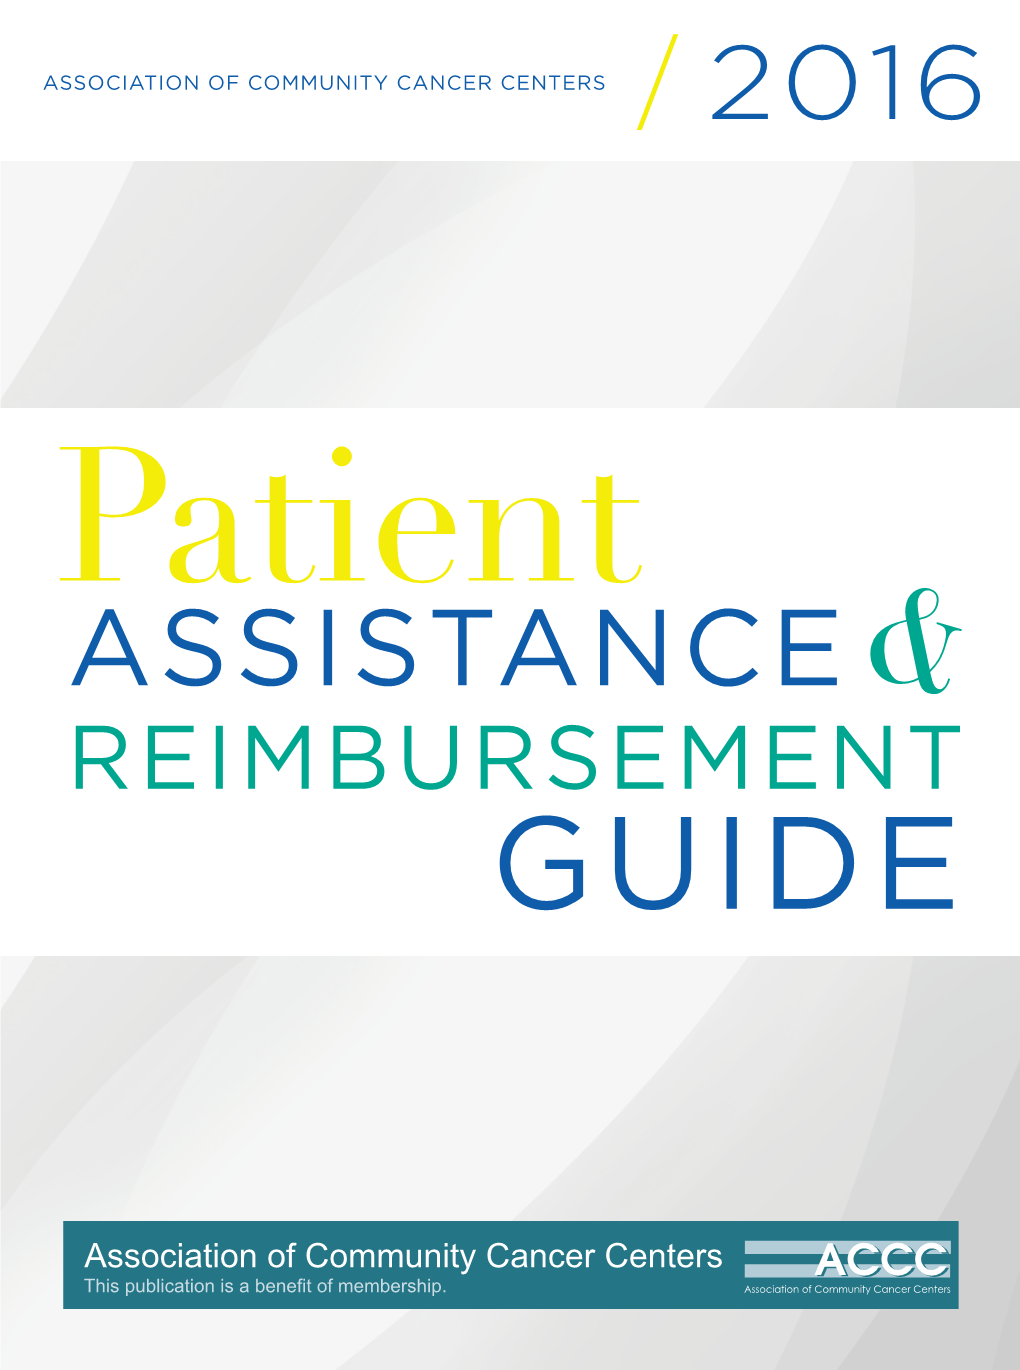 Assistance& Reimbursement Guide